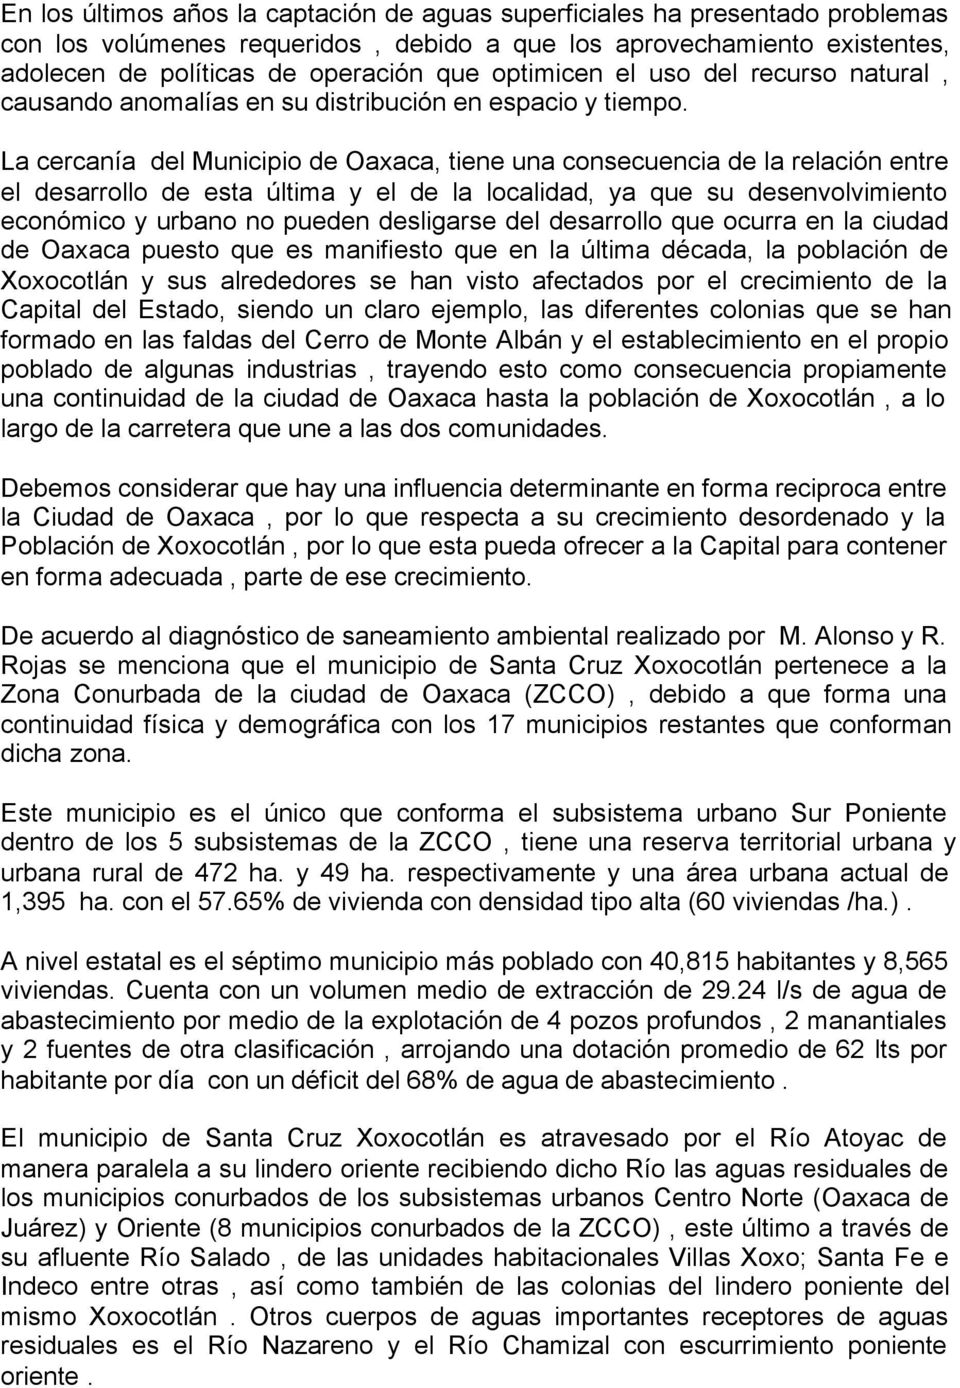 La cercanía del Municipio de Oaxaca, tiene una consecuencia de la relación entre el desarrollo de esta última y el de la localidad, ya que su desenvolvimiento económico y urbano no pueden desligarse